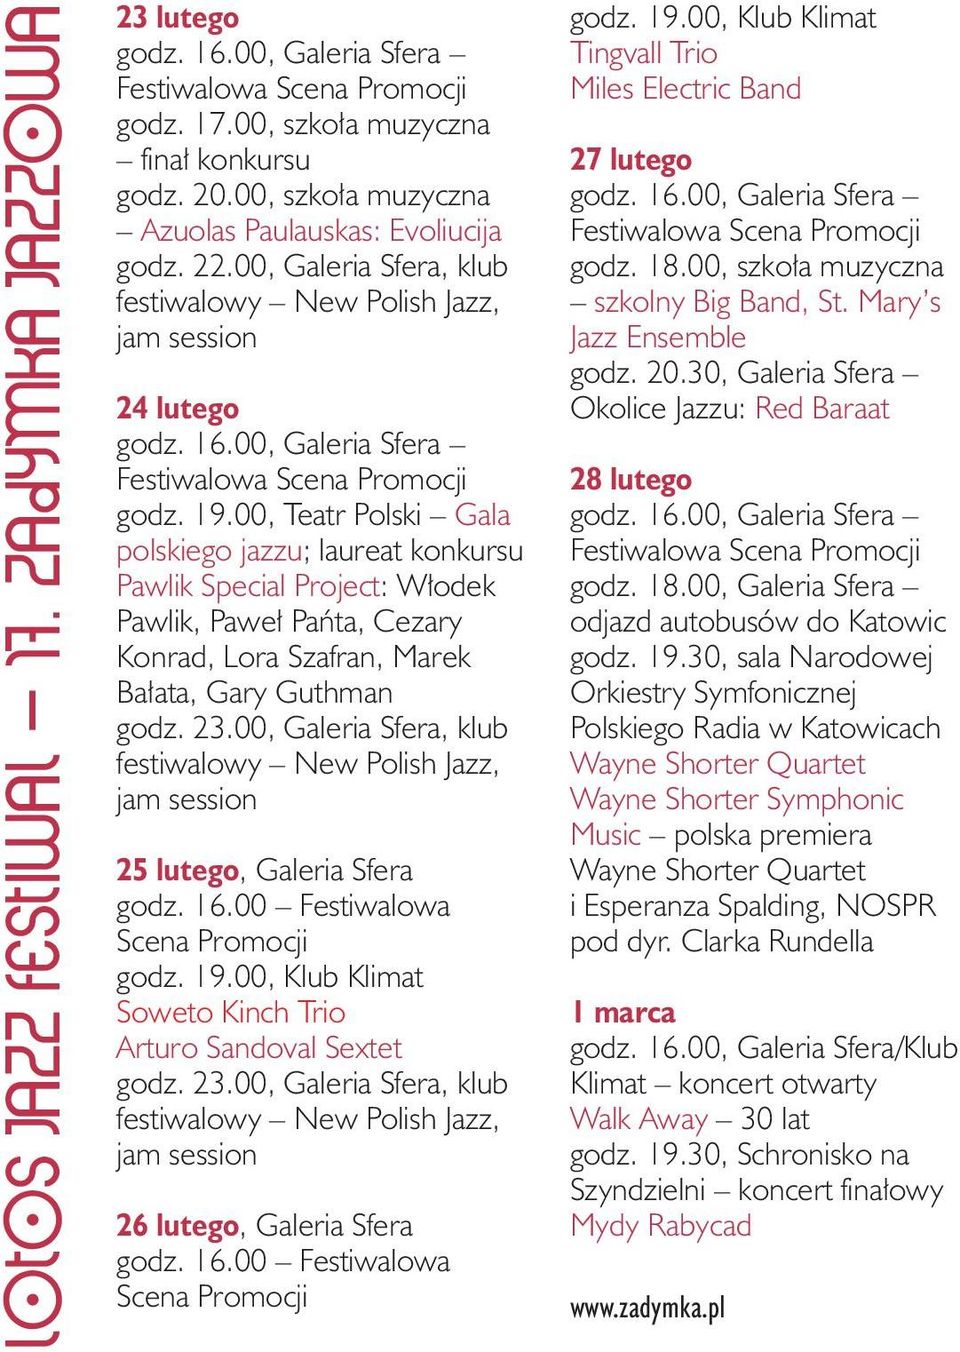 00, Teatr Polski Gala polskiego jazzu; laureat konkursu Pawlik Special Project: Włodek Pawlik, Paweł Pańta, Cezary Konrad, Lora Szafran, Marek Bałata, Gary Guthman godz. 23.